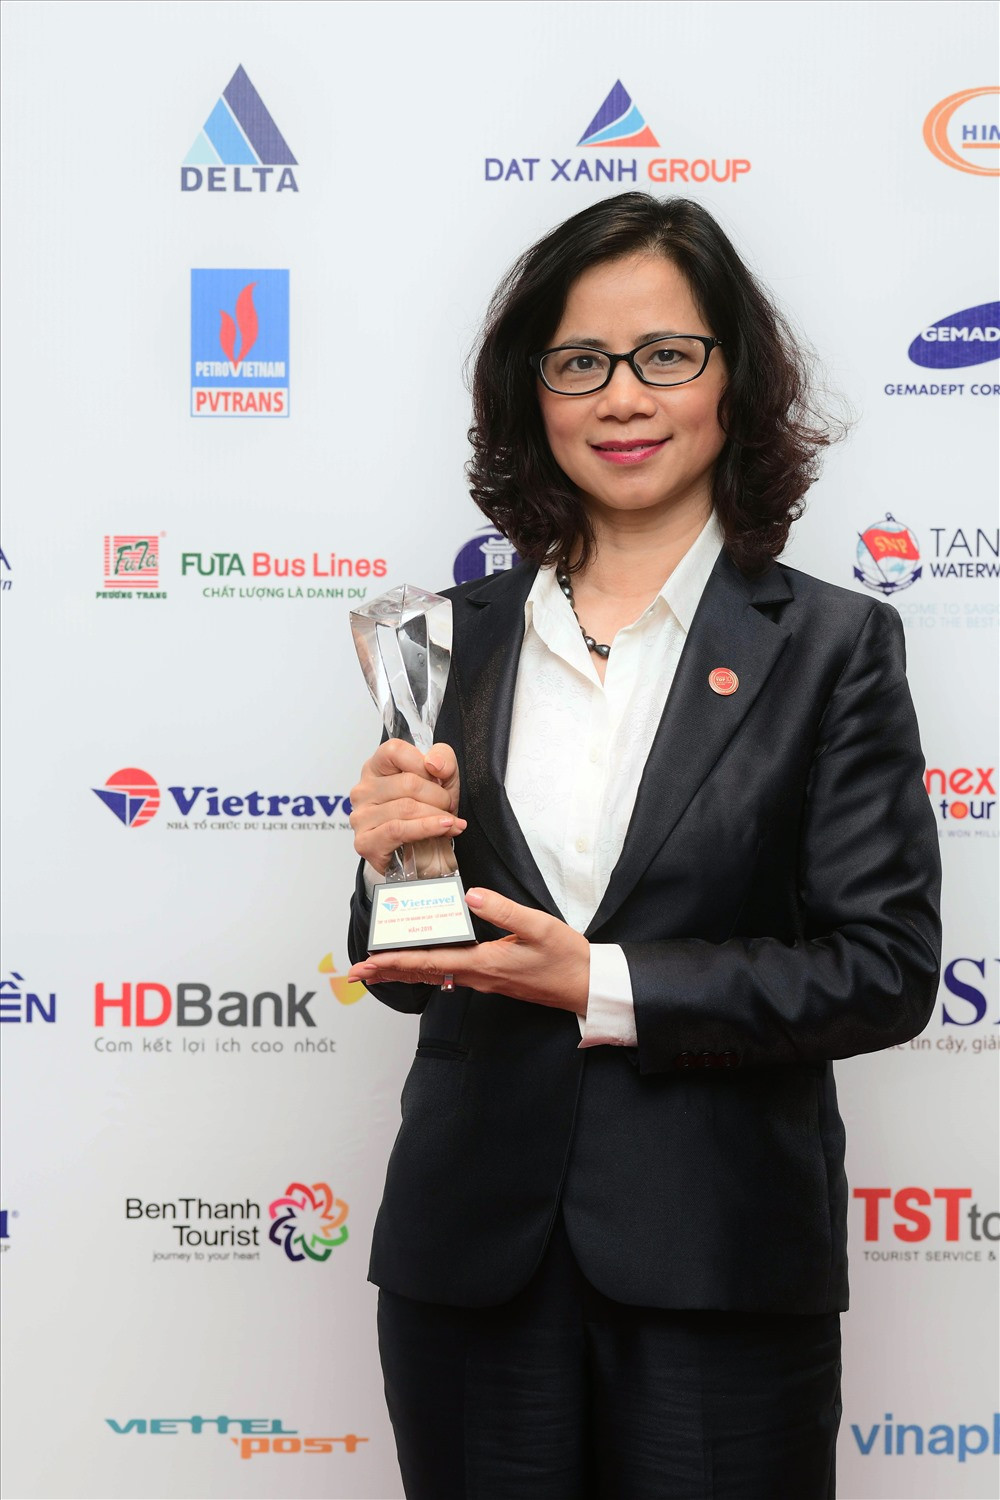 Các giải thưởng đã khẳng định được uy tín và đẳng cấp của Vietravel trong cộng đồng doanh nghiệp du lịch Việt Nam